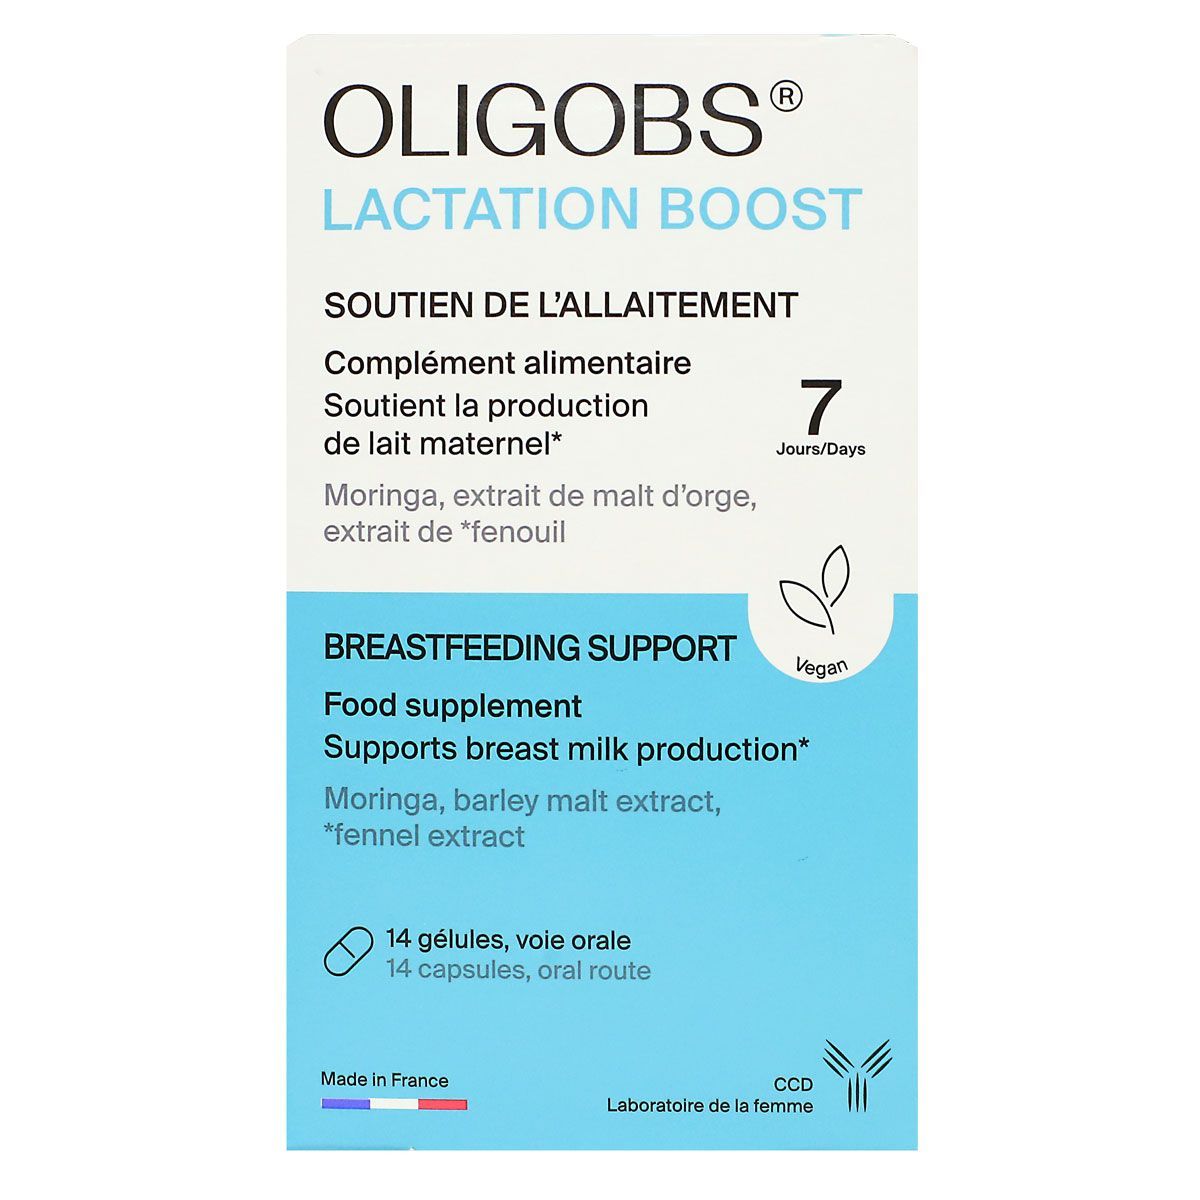 Oligobs Lactation Boost est un complément alimentaire qui soutient